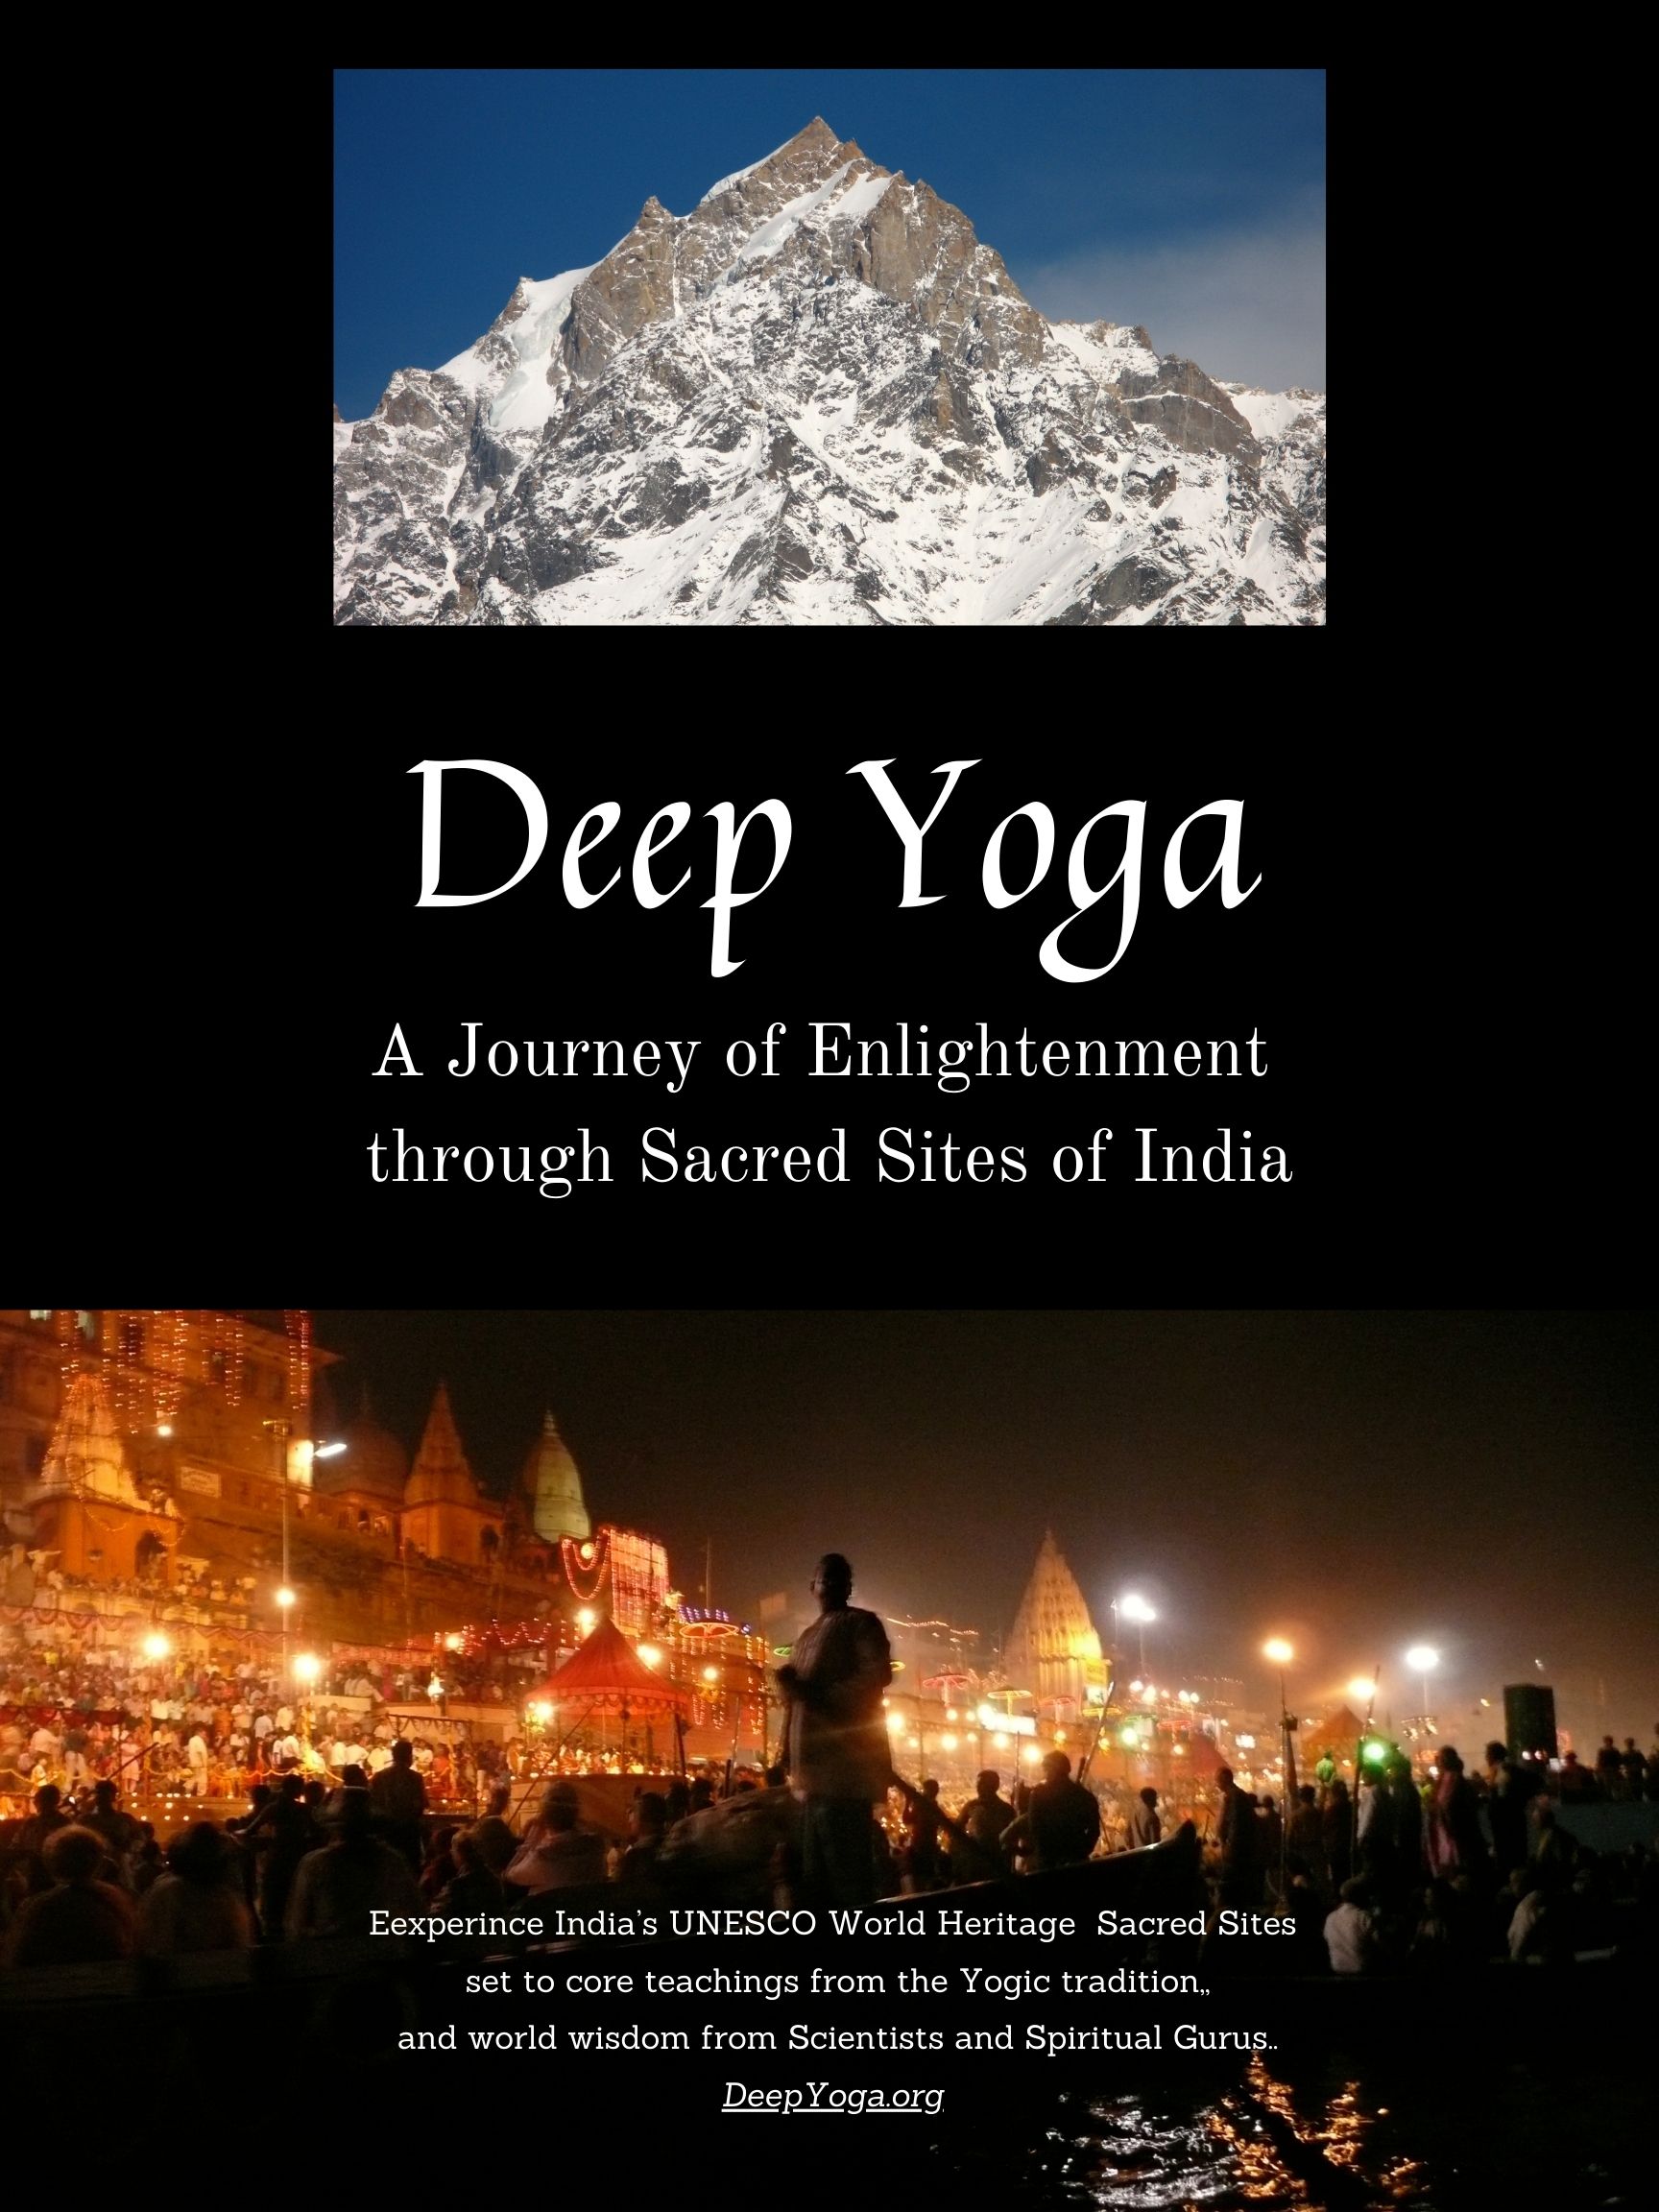 Deep Yoga - the movie